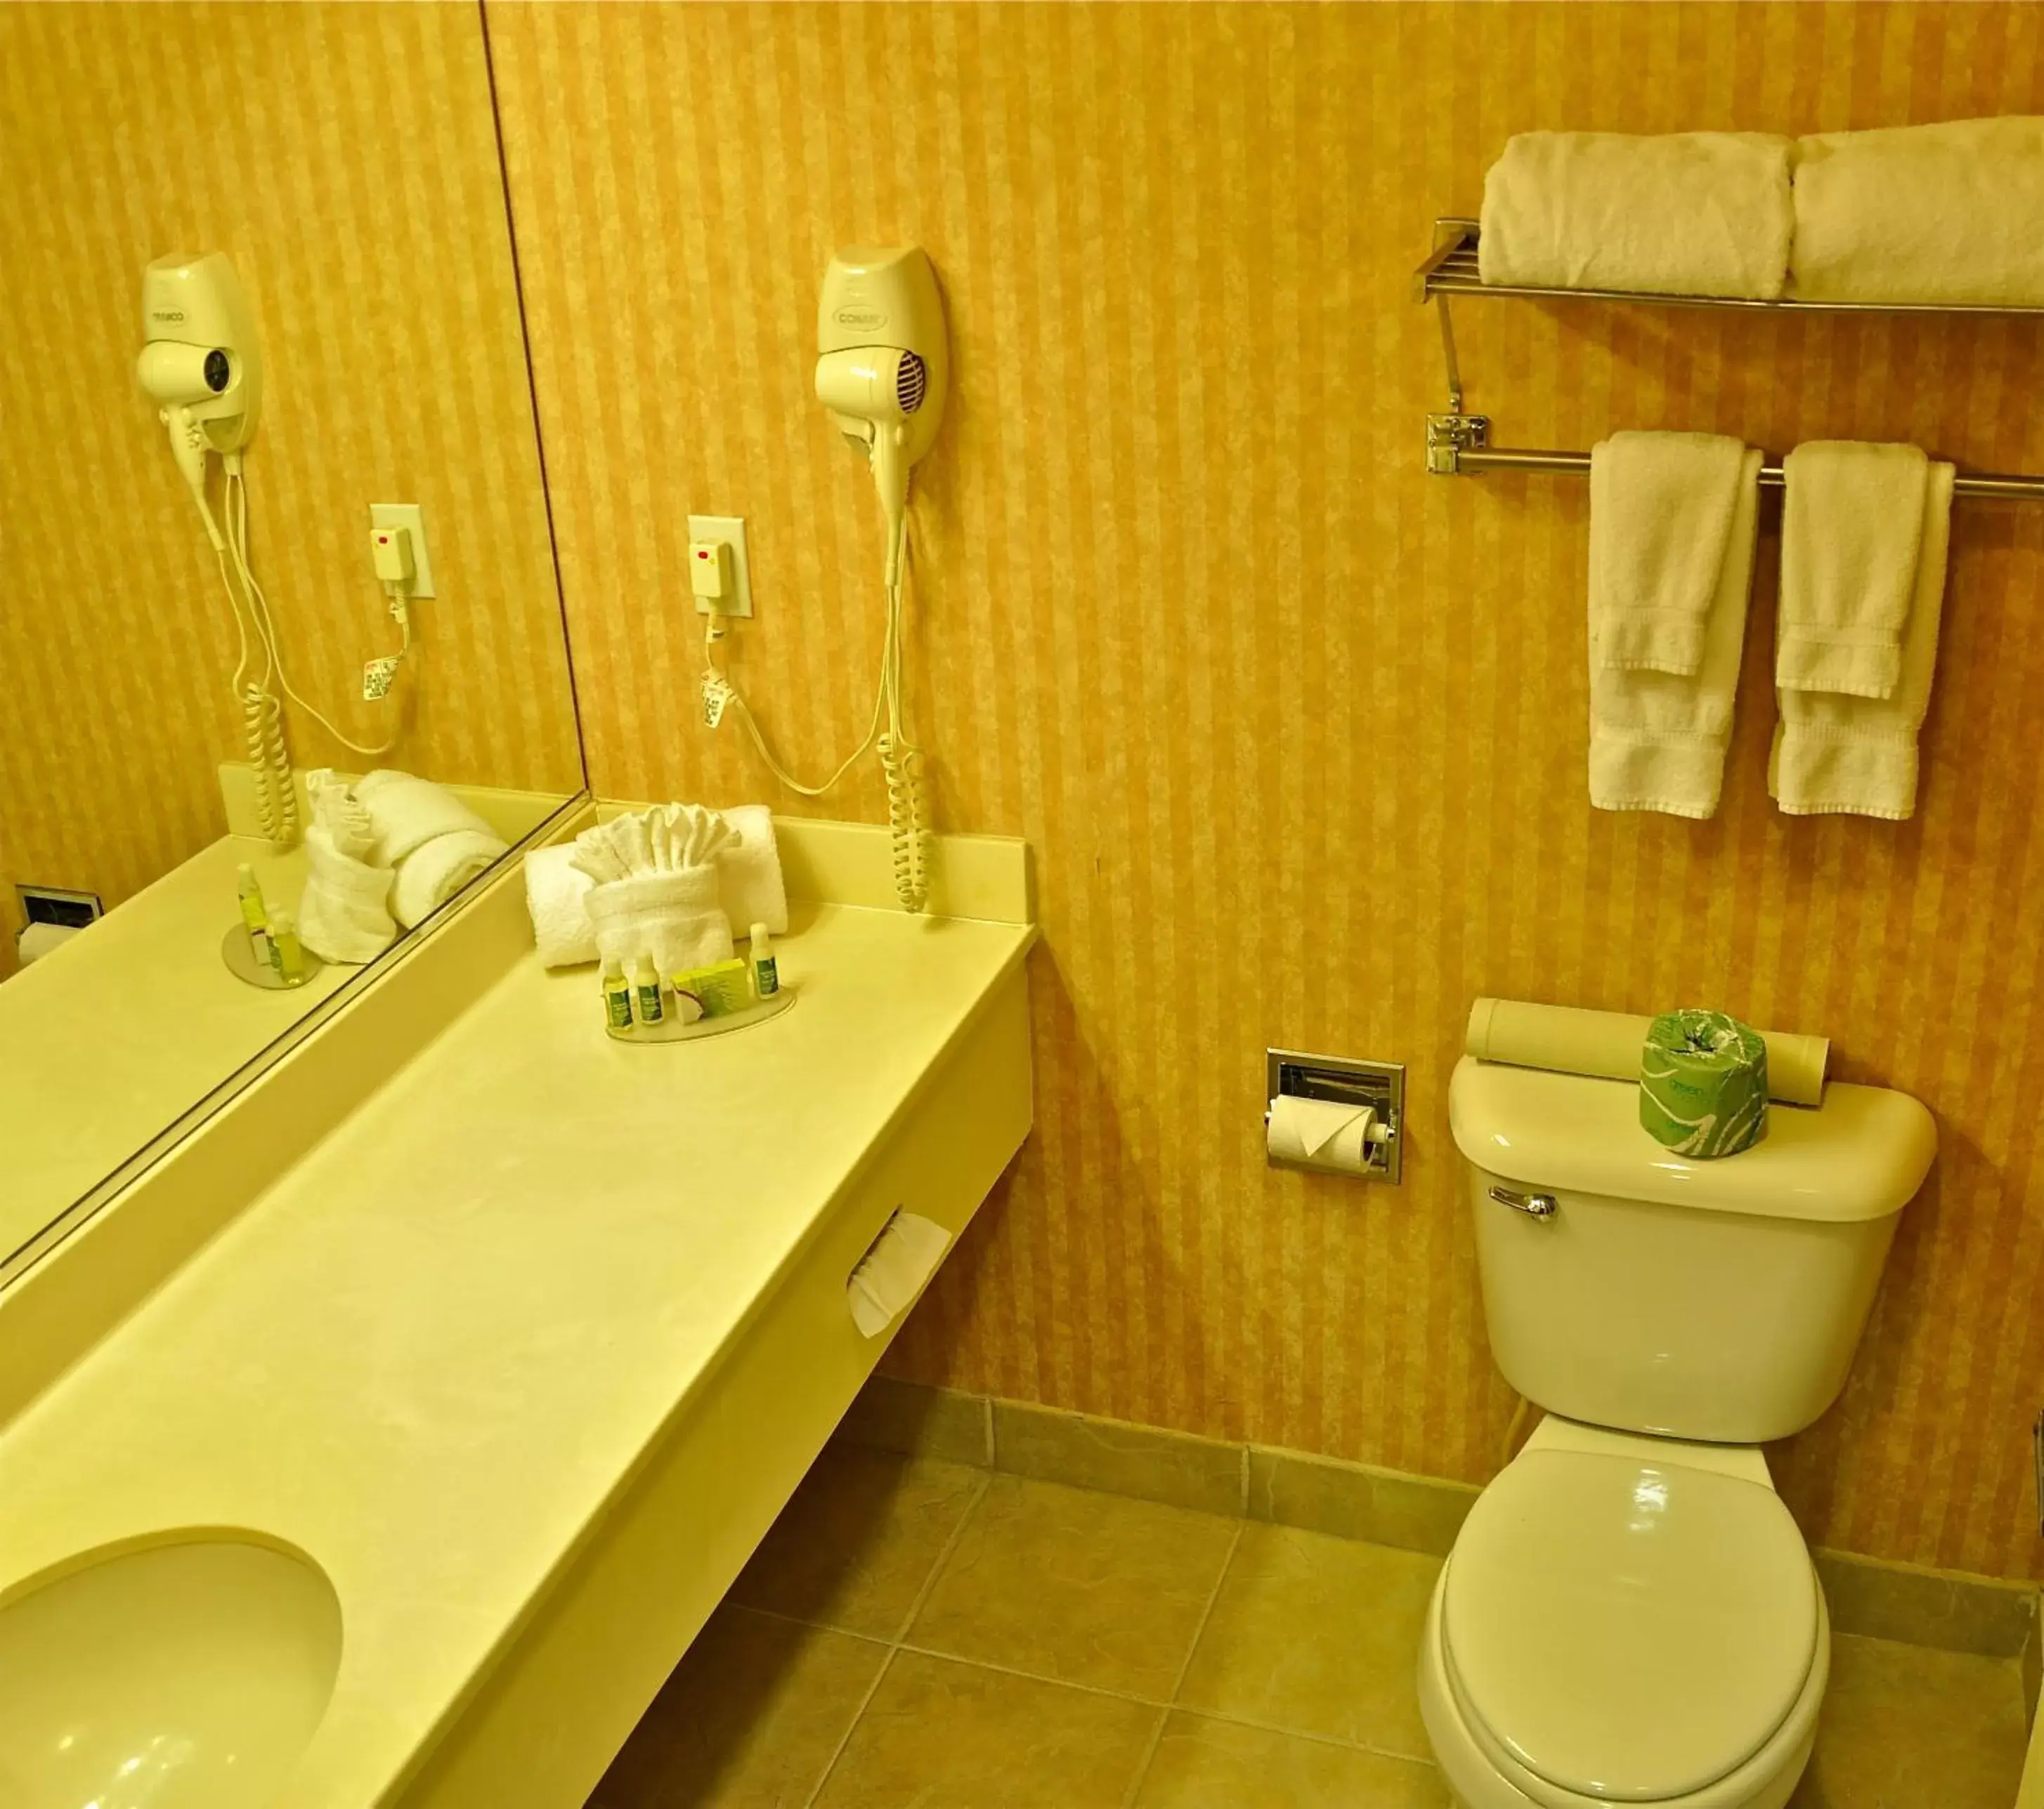 Bathroom in Landmark Inn Fort Irwin